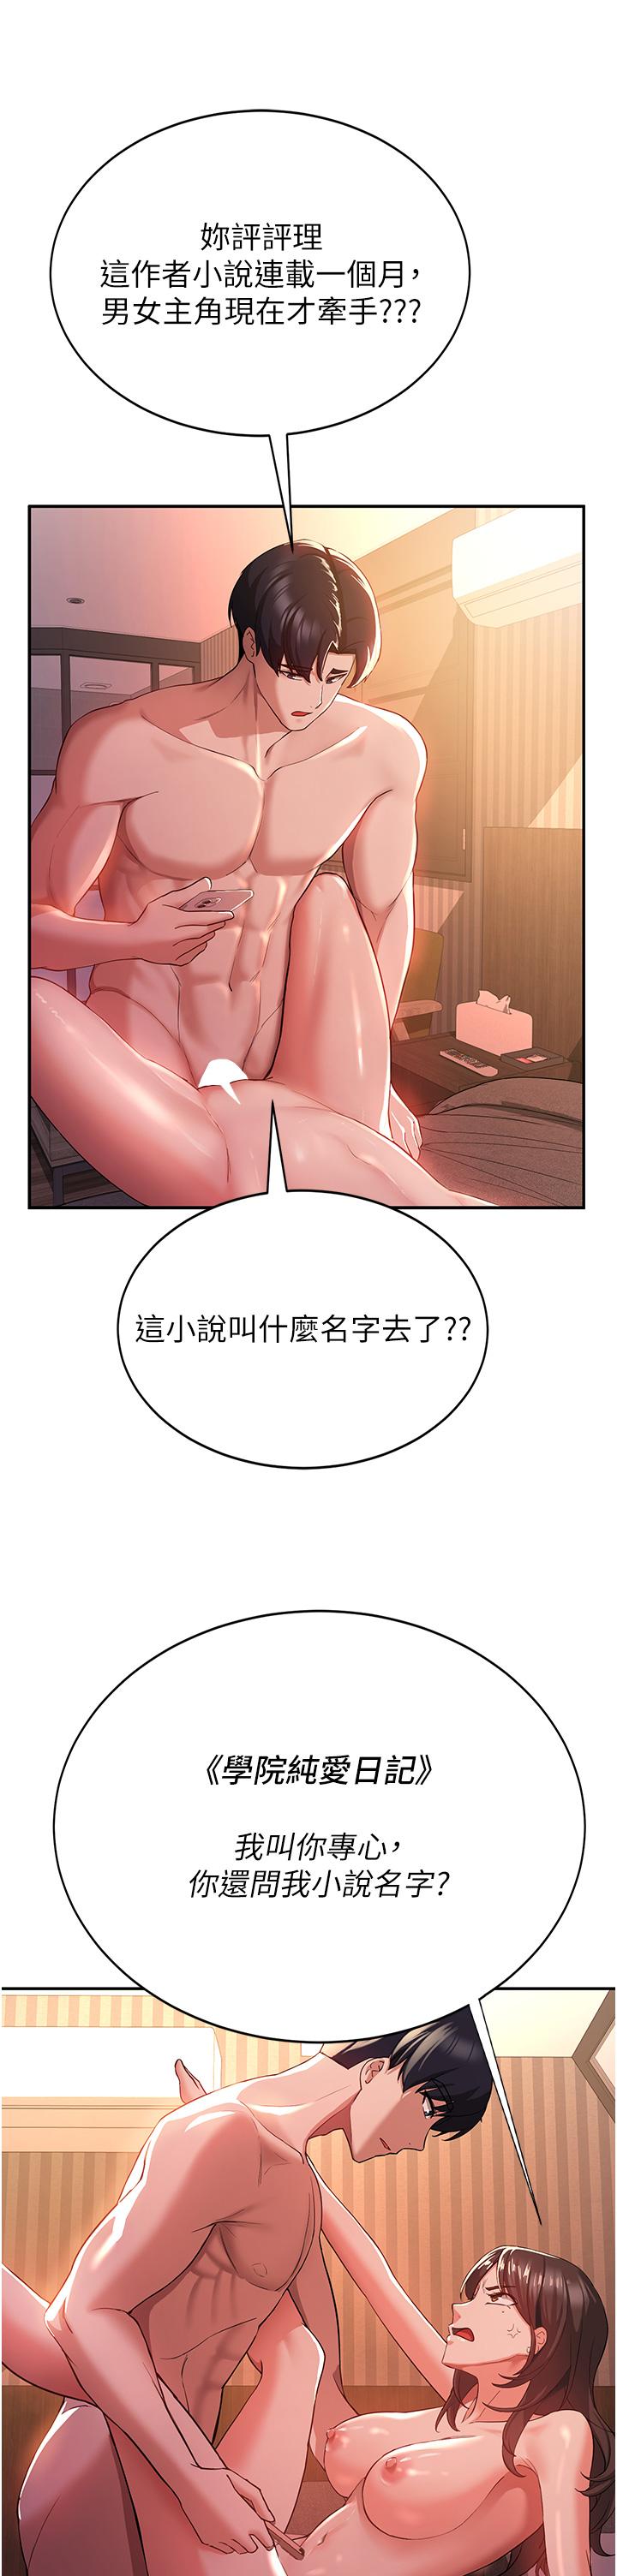 韩国漫画抢女友速成班韩漫_抢女友速成班-第1话-穿越到小说里了？！在线免费阅读-韩国漫画-第8张图片